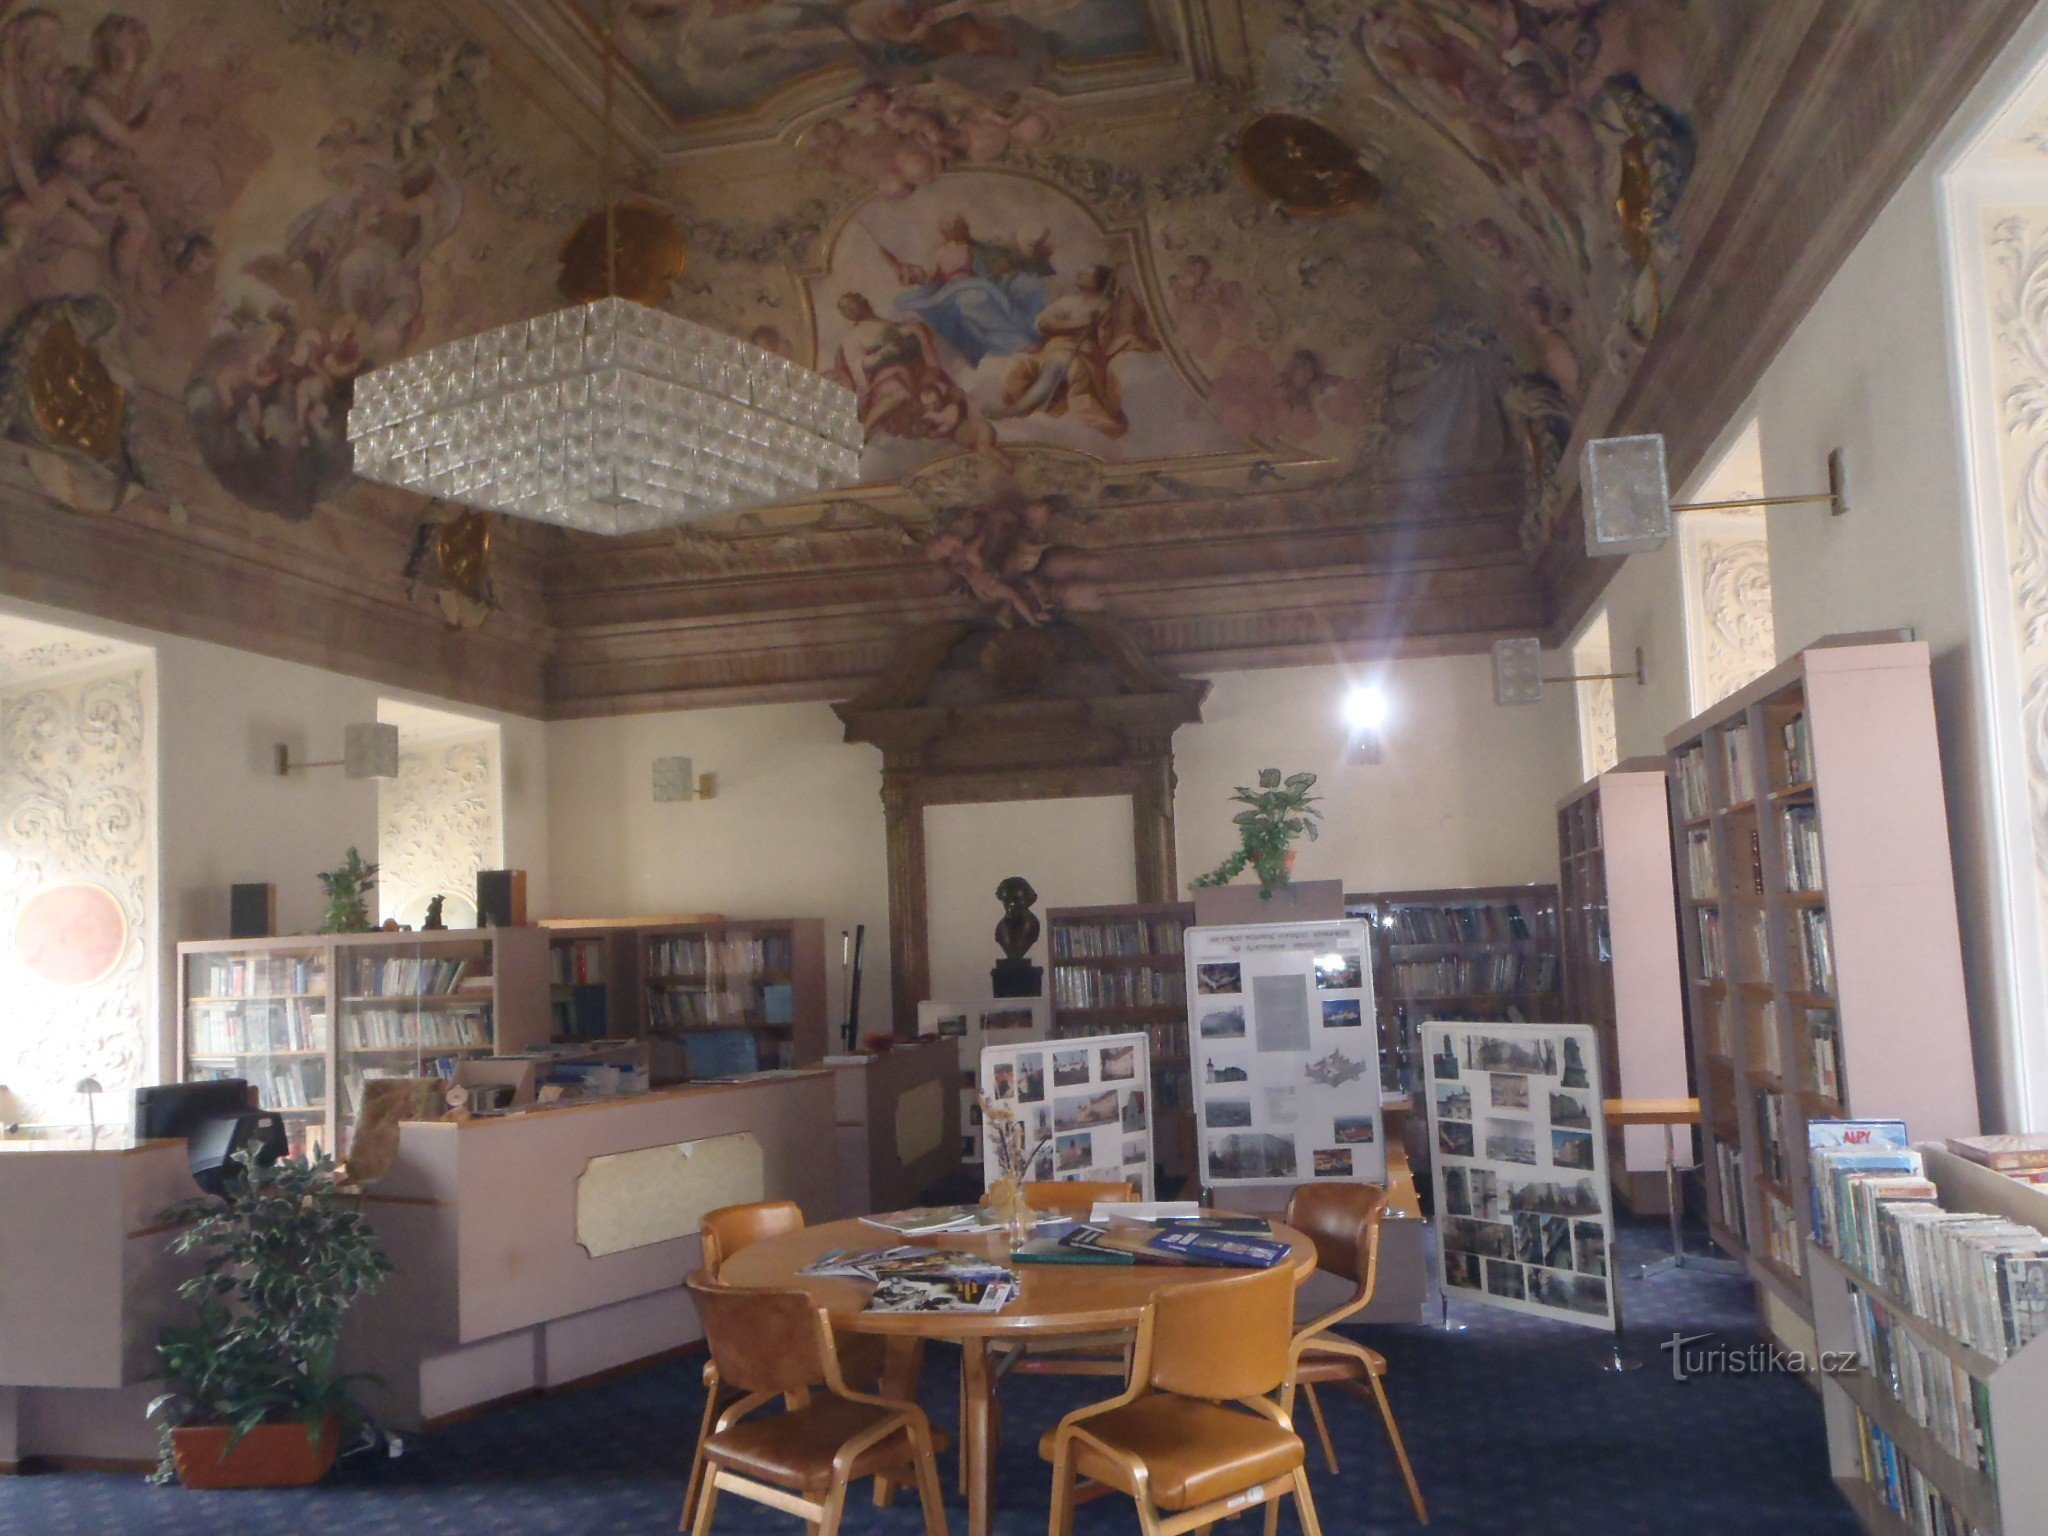 Biblioteca do mosteiro